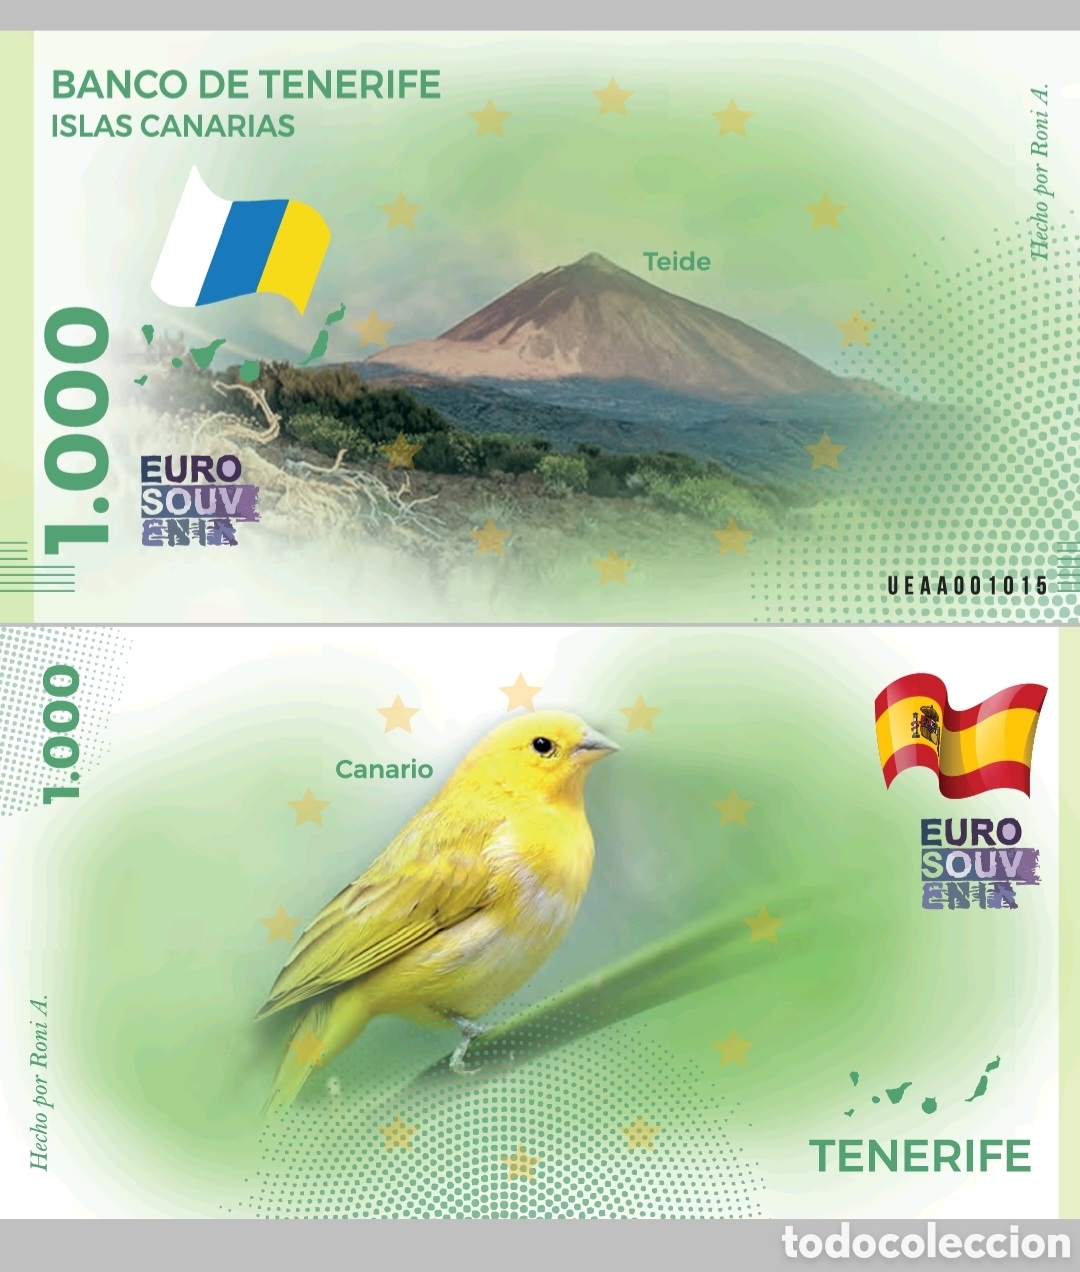 Comprar tickets Canarias